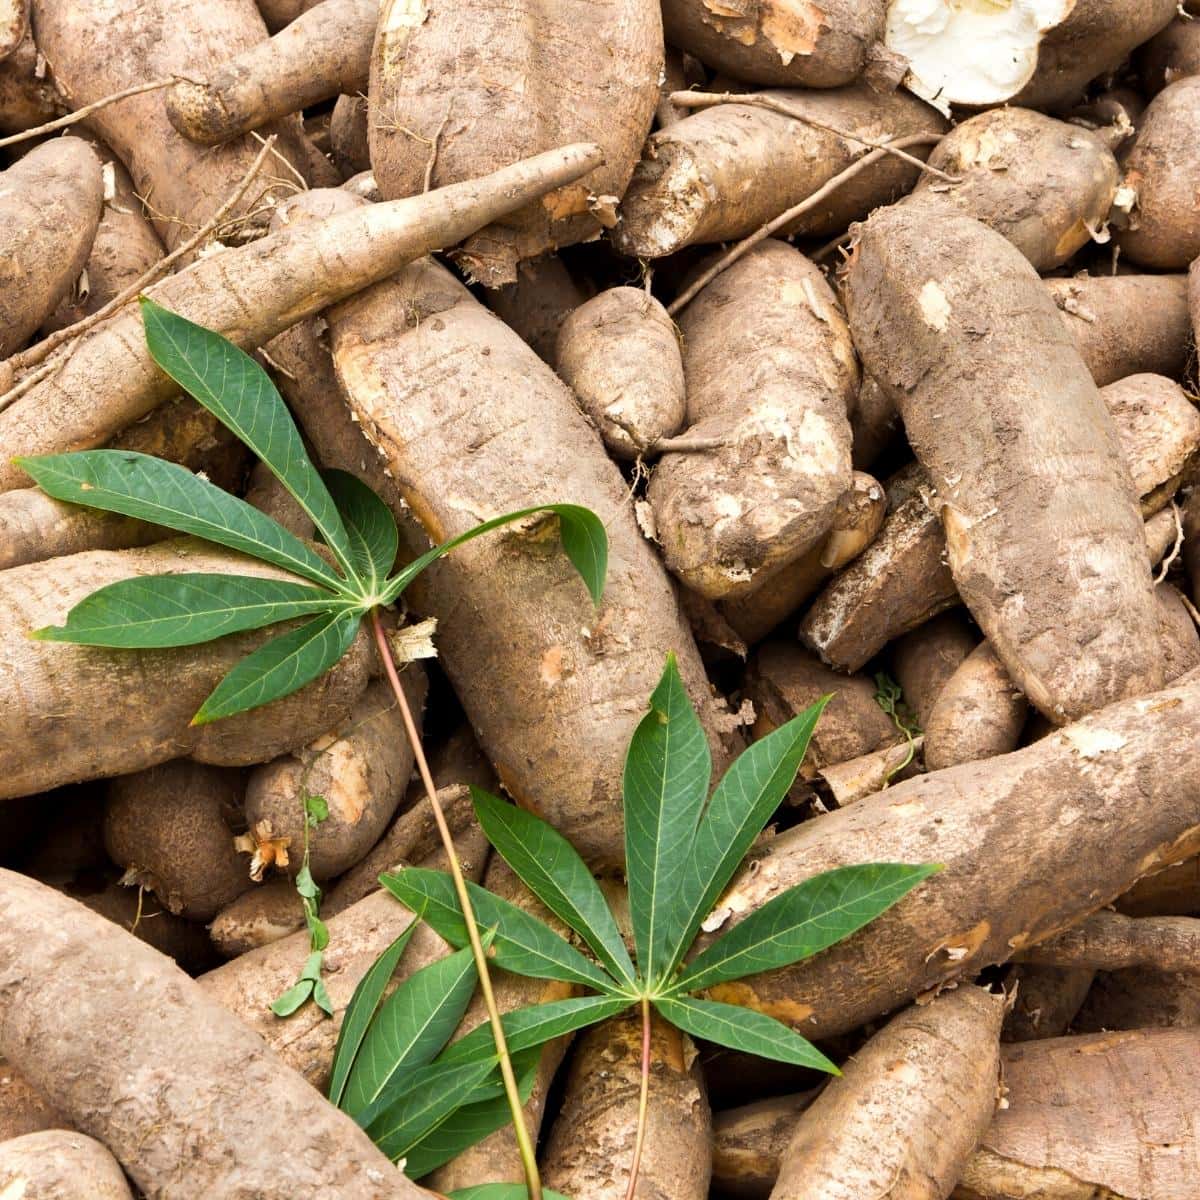 Cassava root, aka yuca or manioc.